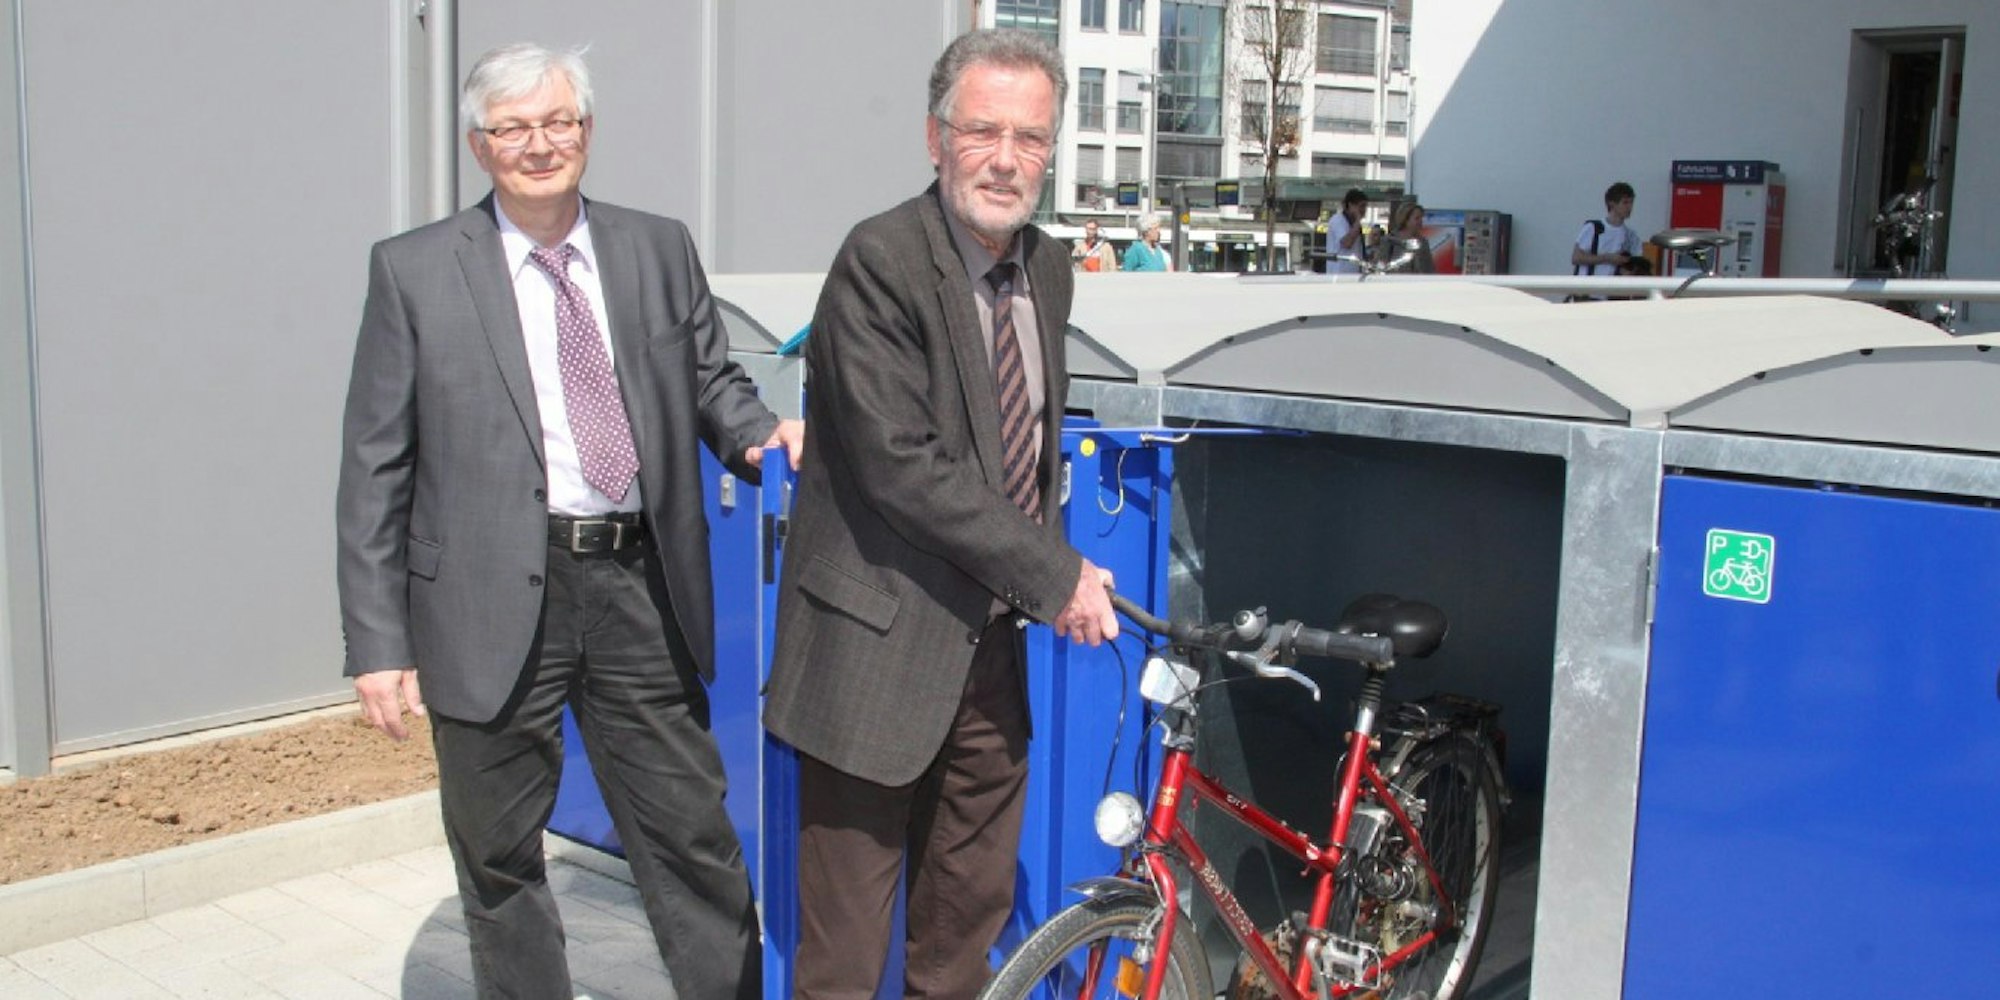 Bürgermeister Uwe Friedl (r.) und Rainer Klein-Lüpke weihten die neuen Fahrradständer und -boxen am Bahnhof ein.